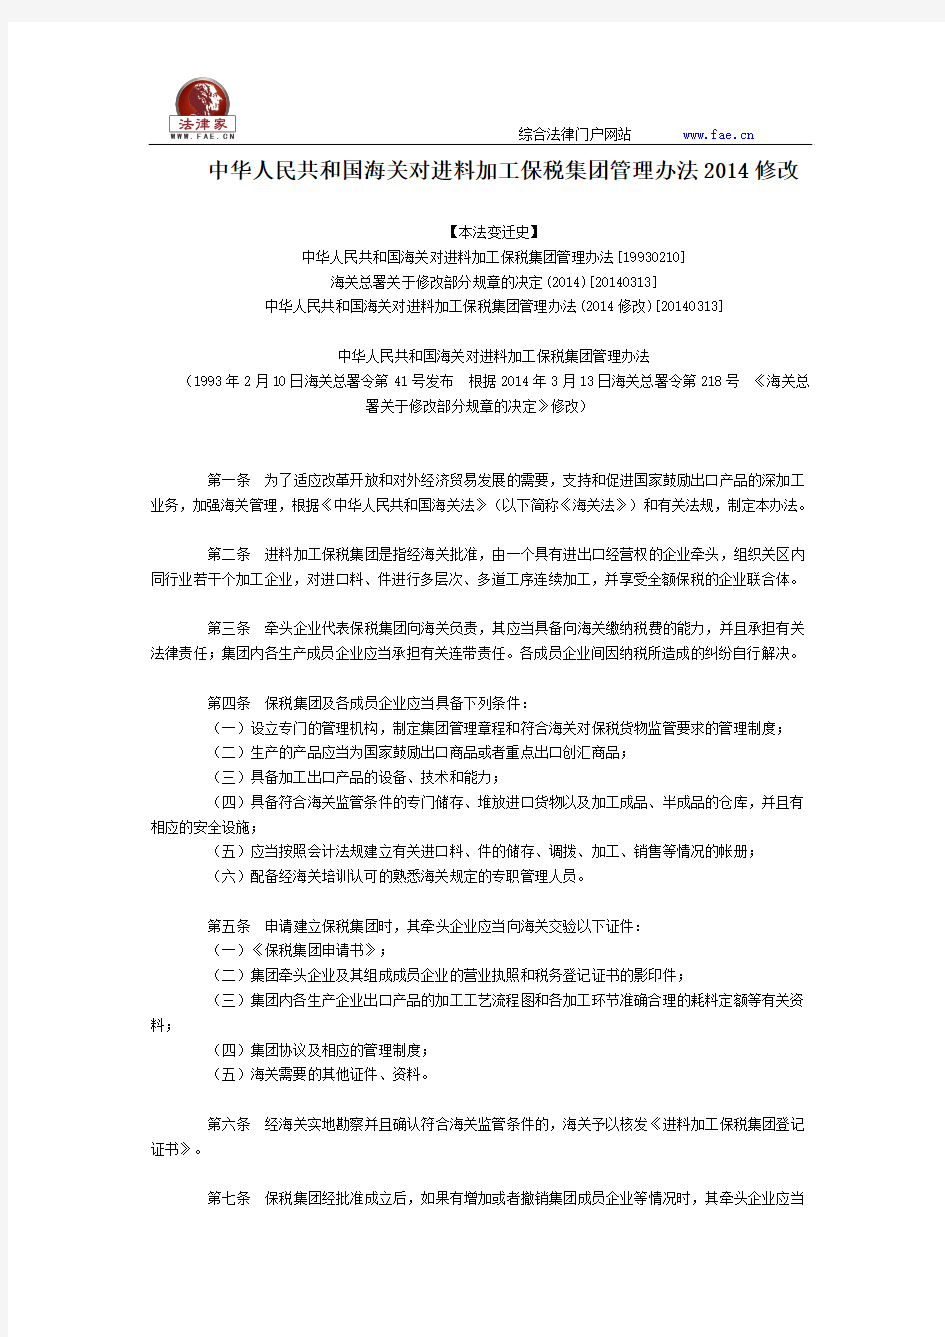 中华人民共和国海关对进料加工保税集团管理办法2014修改全文--国务院部委规章